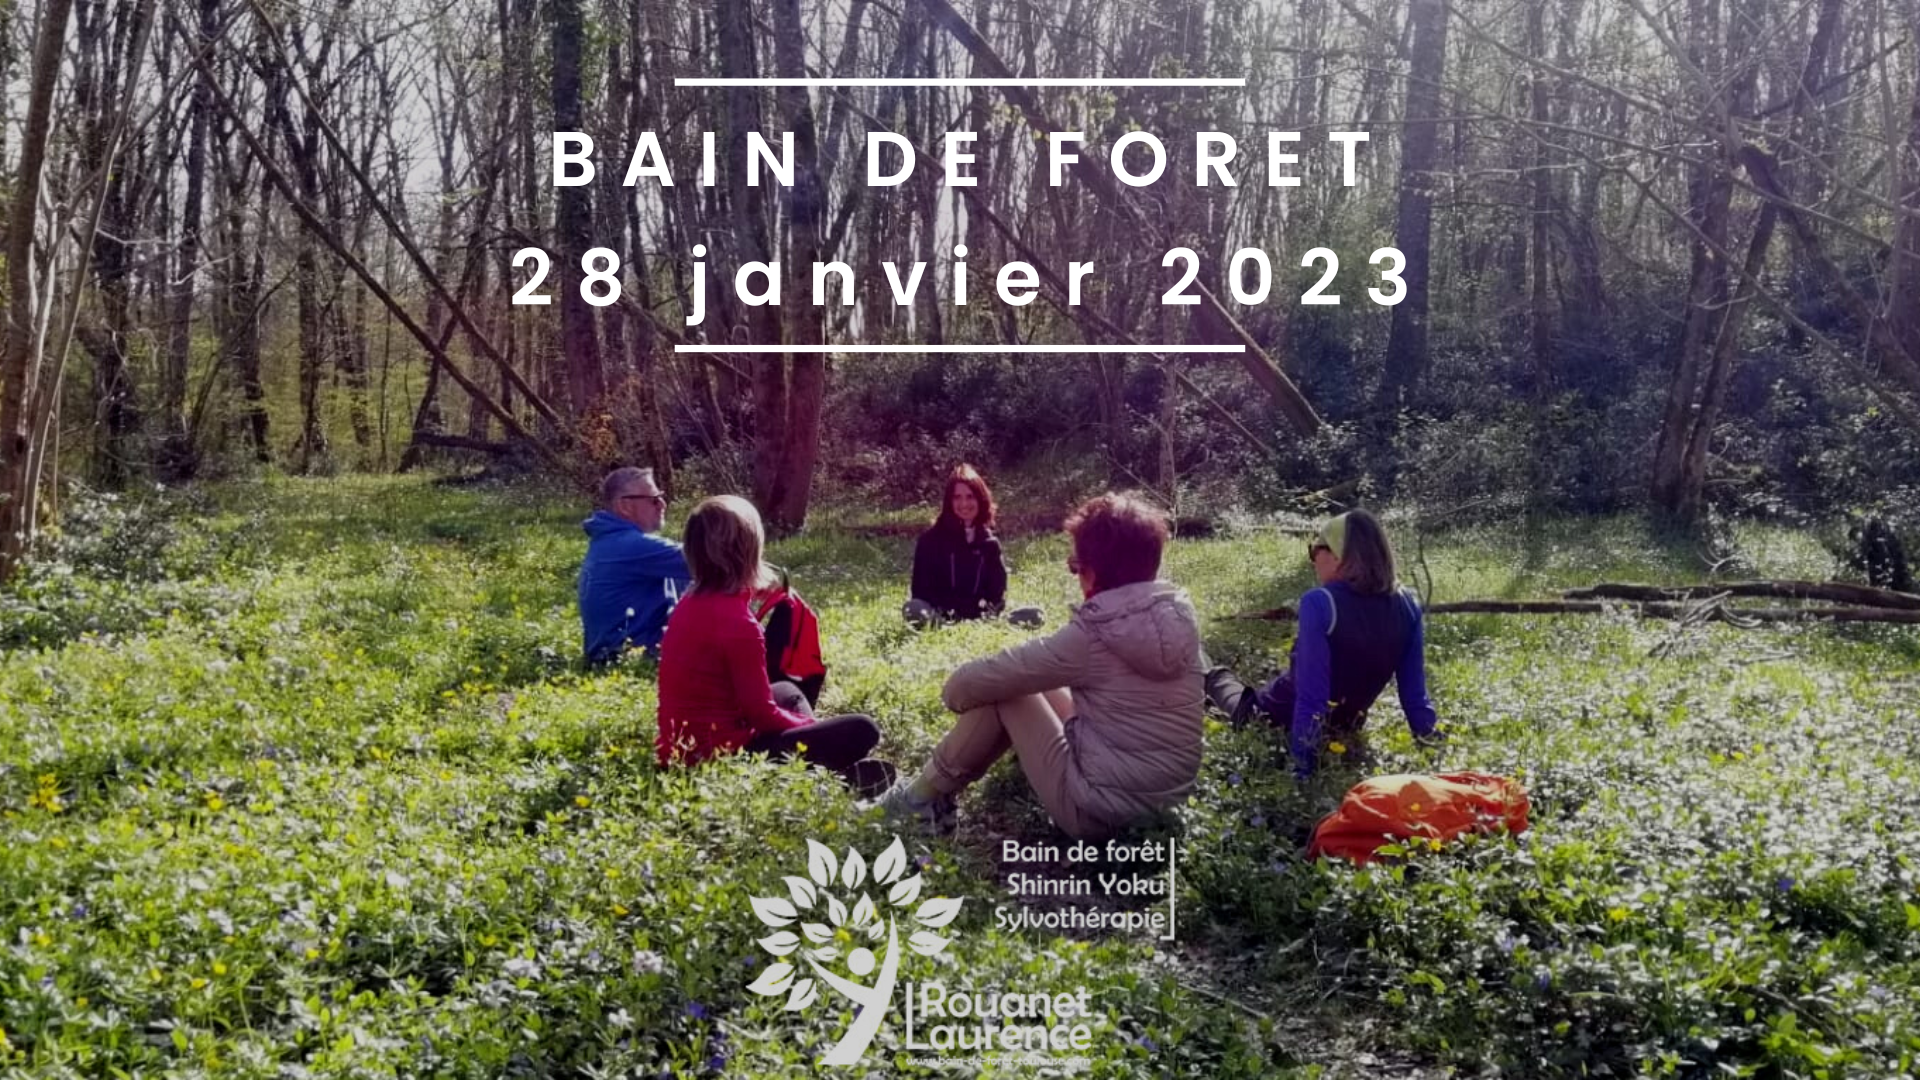 Bain de forêt du 28 janvier 2023 : offrez vous une parenthèse de bien être, de détente, de respiration, de reconnexion à soi et à la nature durant deux heures d'immersion en forêt.